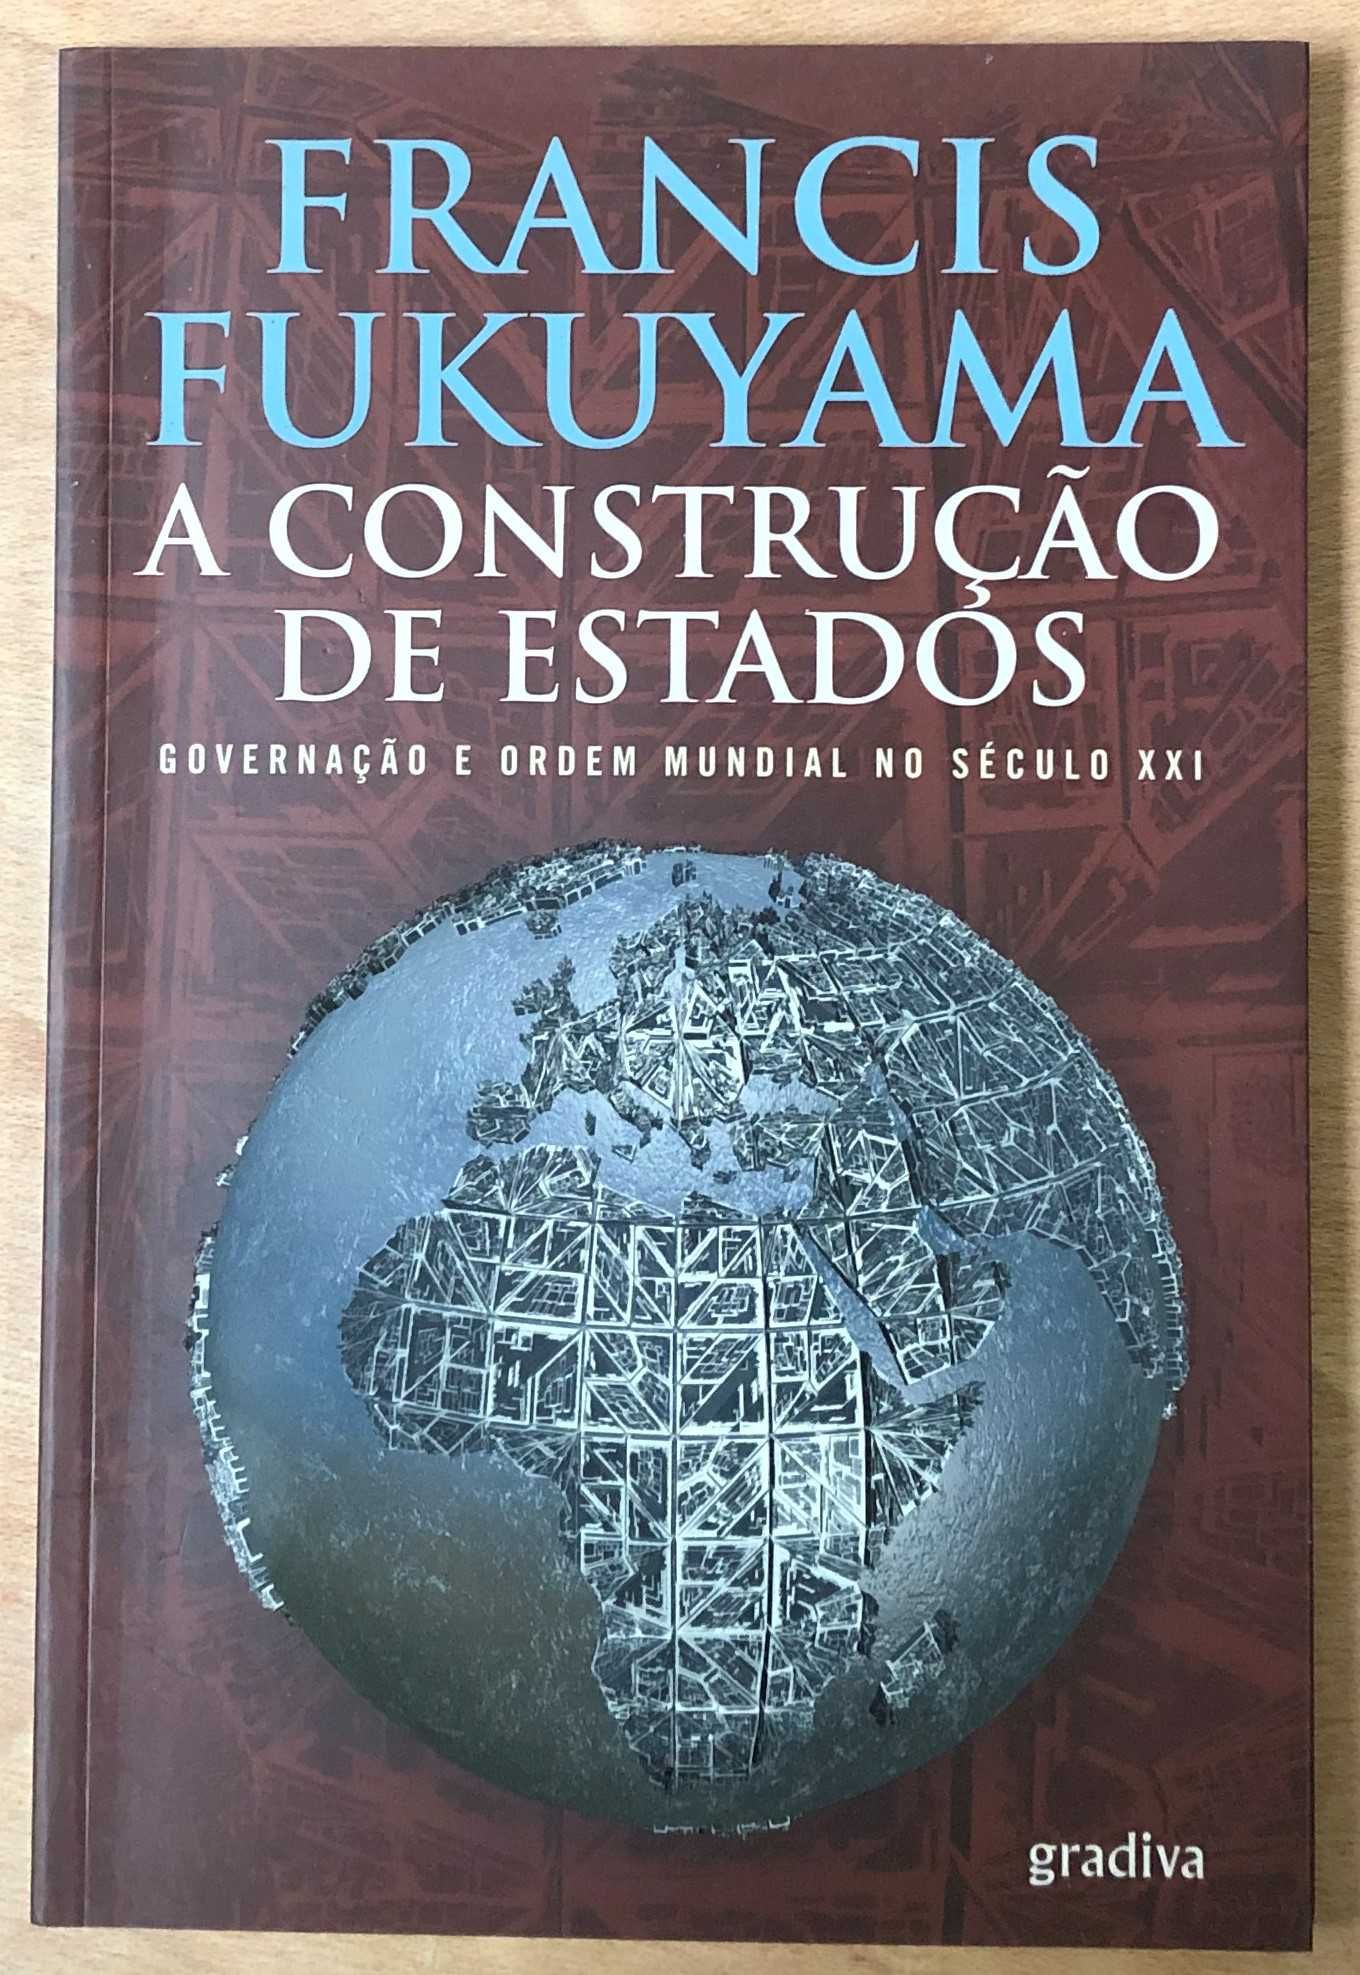 francis fukuyama, a construção de estados, gradiva